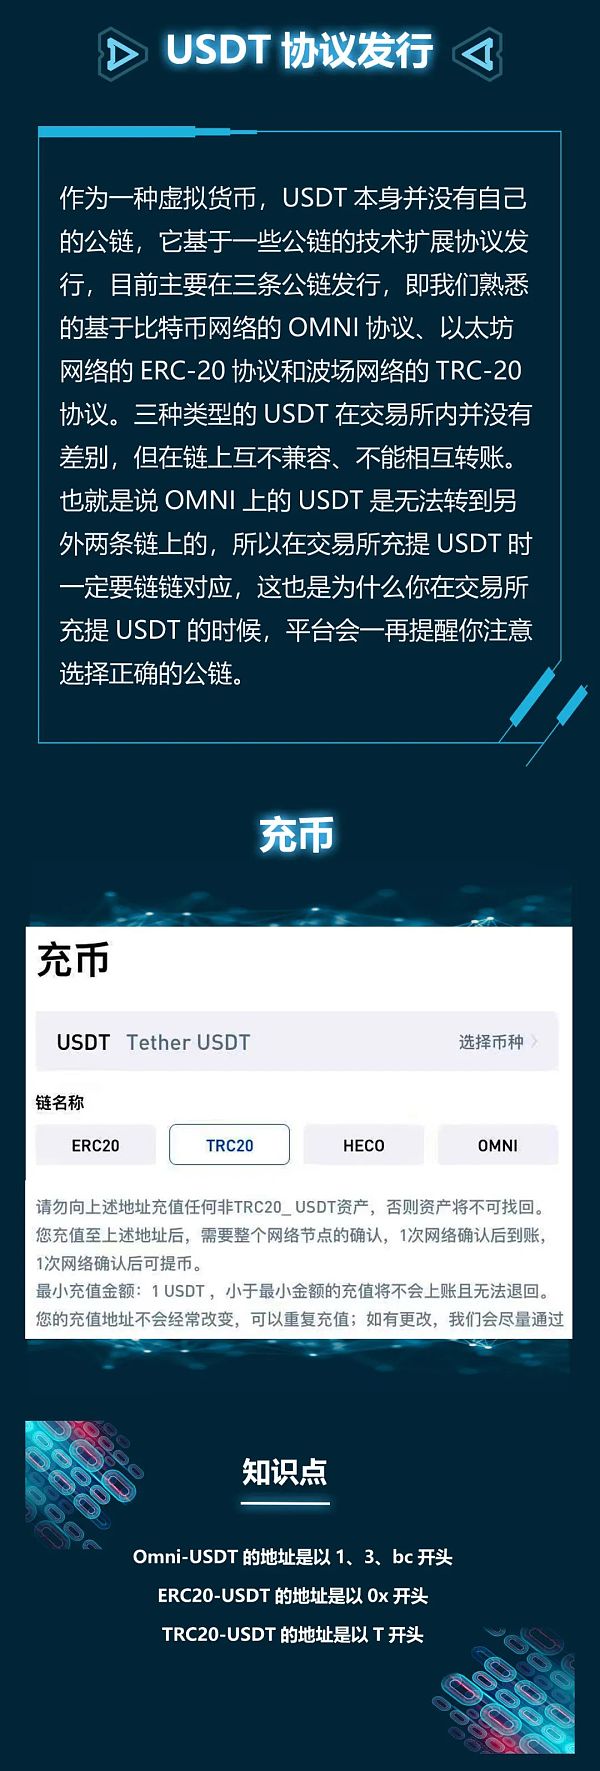 USDT钱包中文版，usdt钱包中文版官方版下载